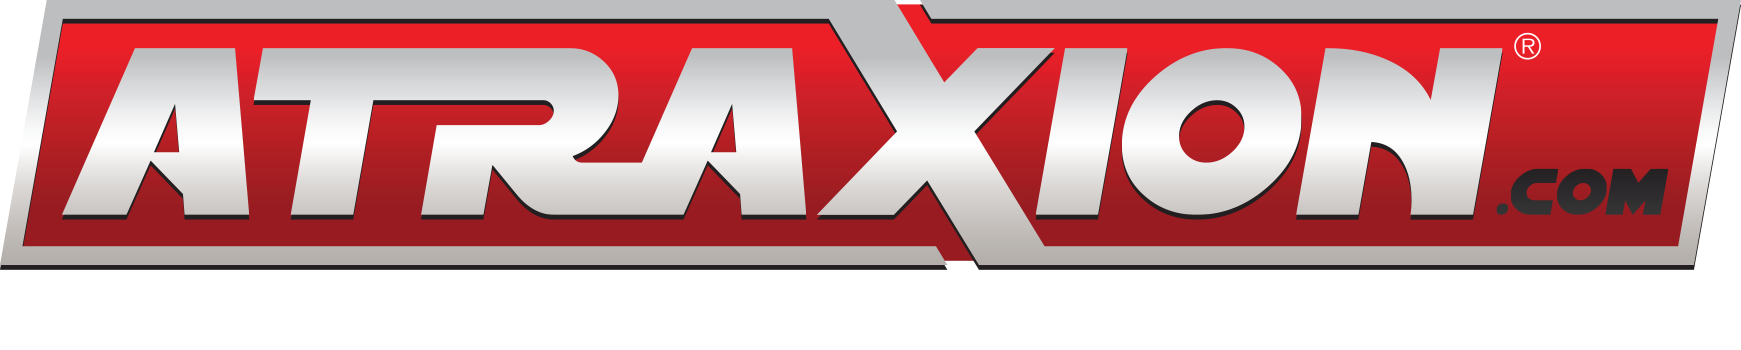 Atraxion logo